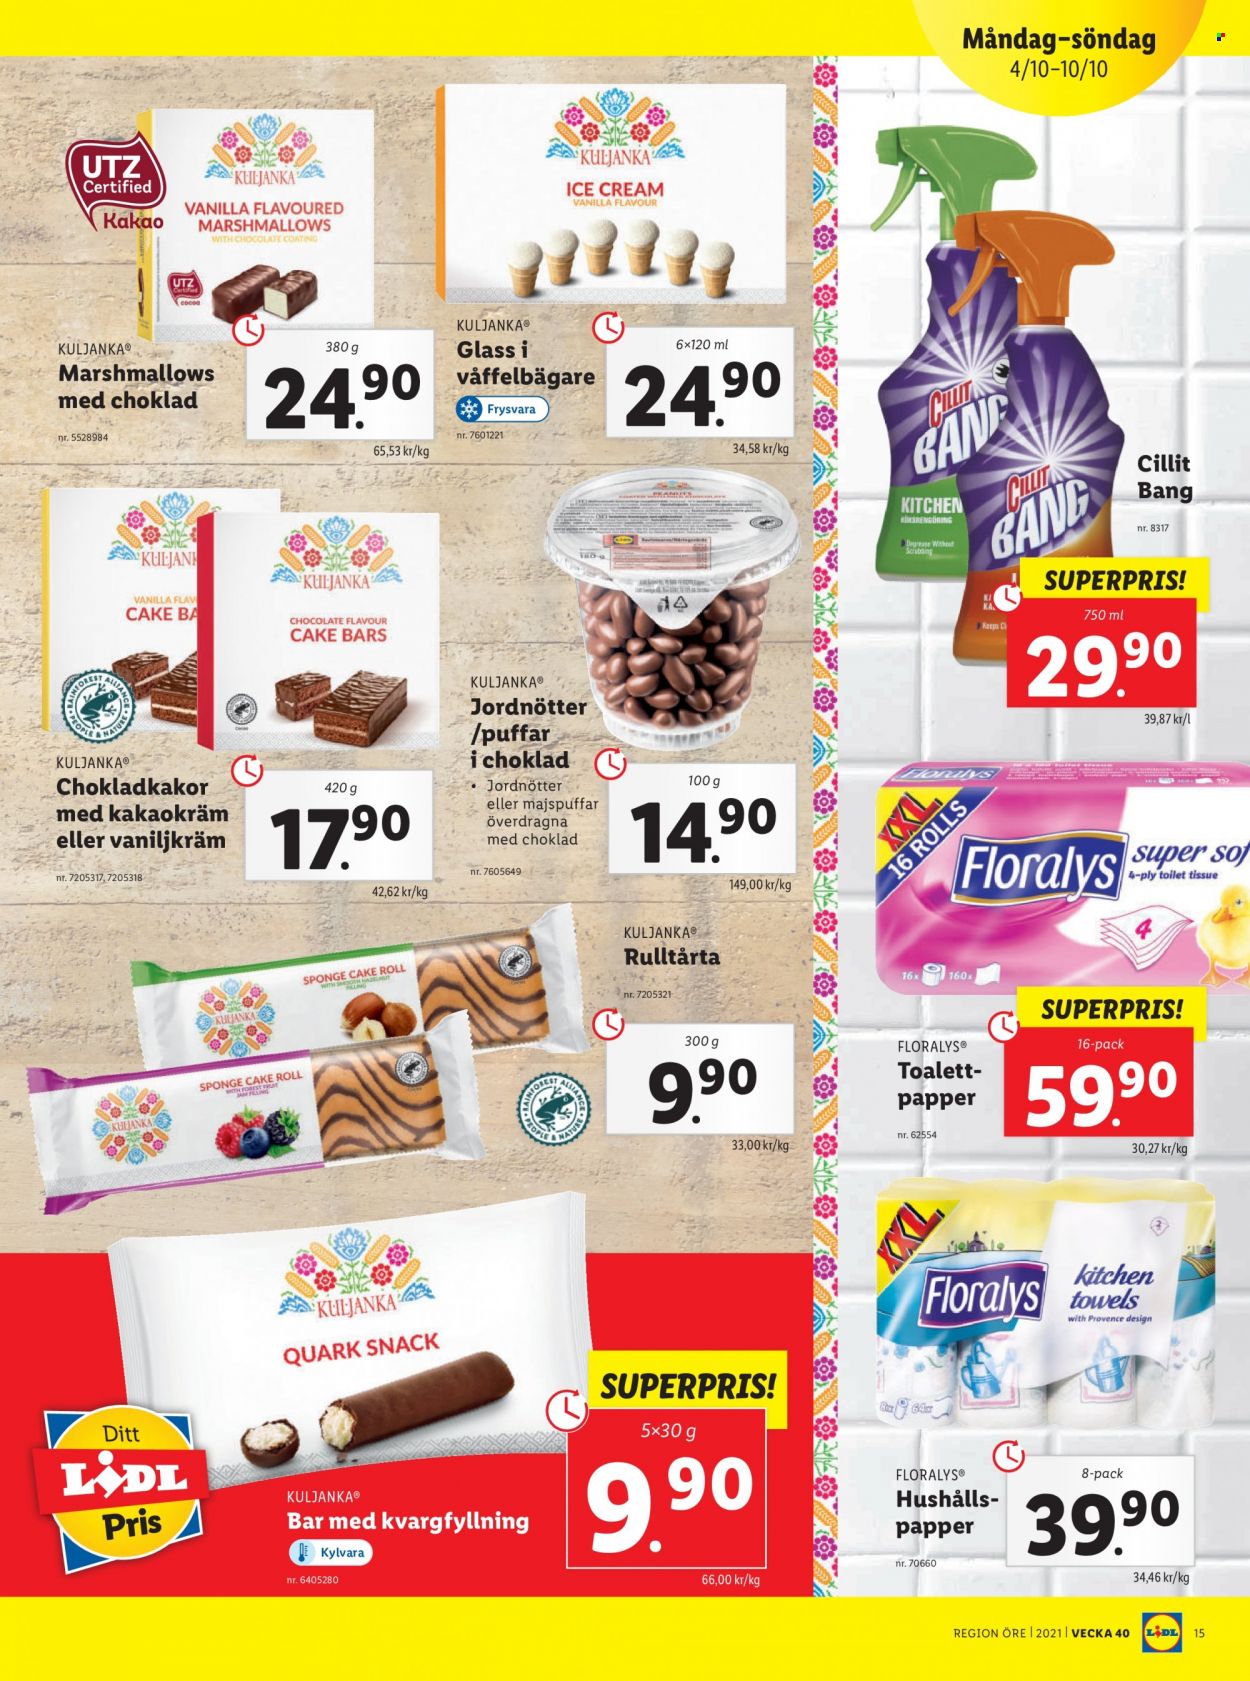 thumbnail - Lidl reklamblad - 4/10 2021 - 10/10 2021 - varor från reklamblad - marshmallows, choklad, toalettpapper, Cillit, Cillit Bang, kroppsolja. Sida 15.